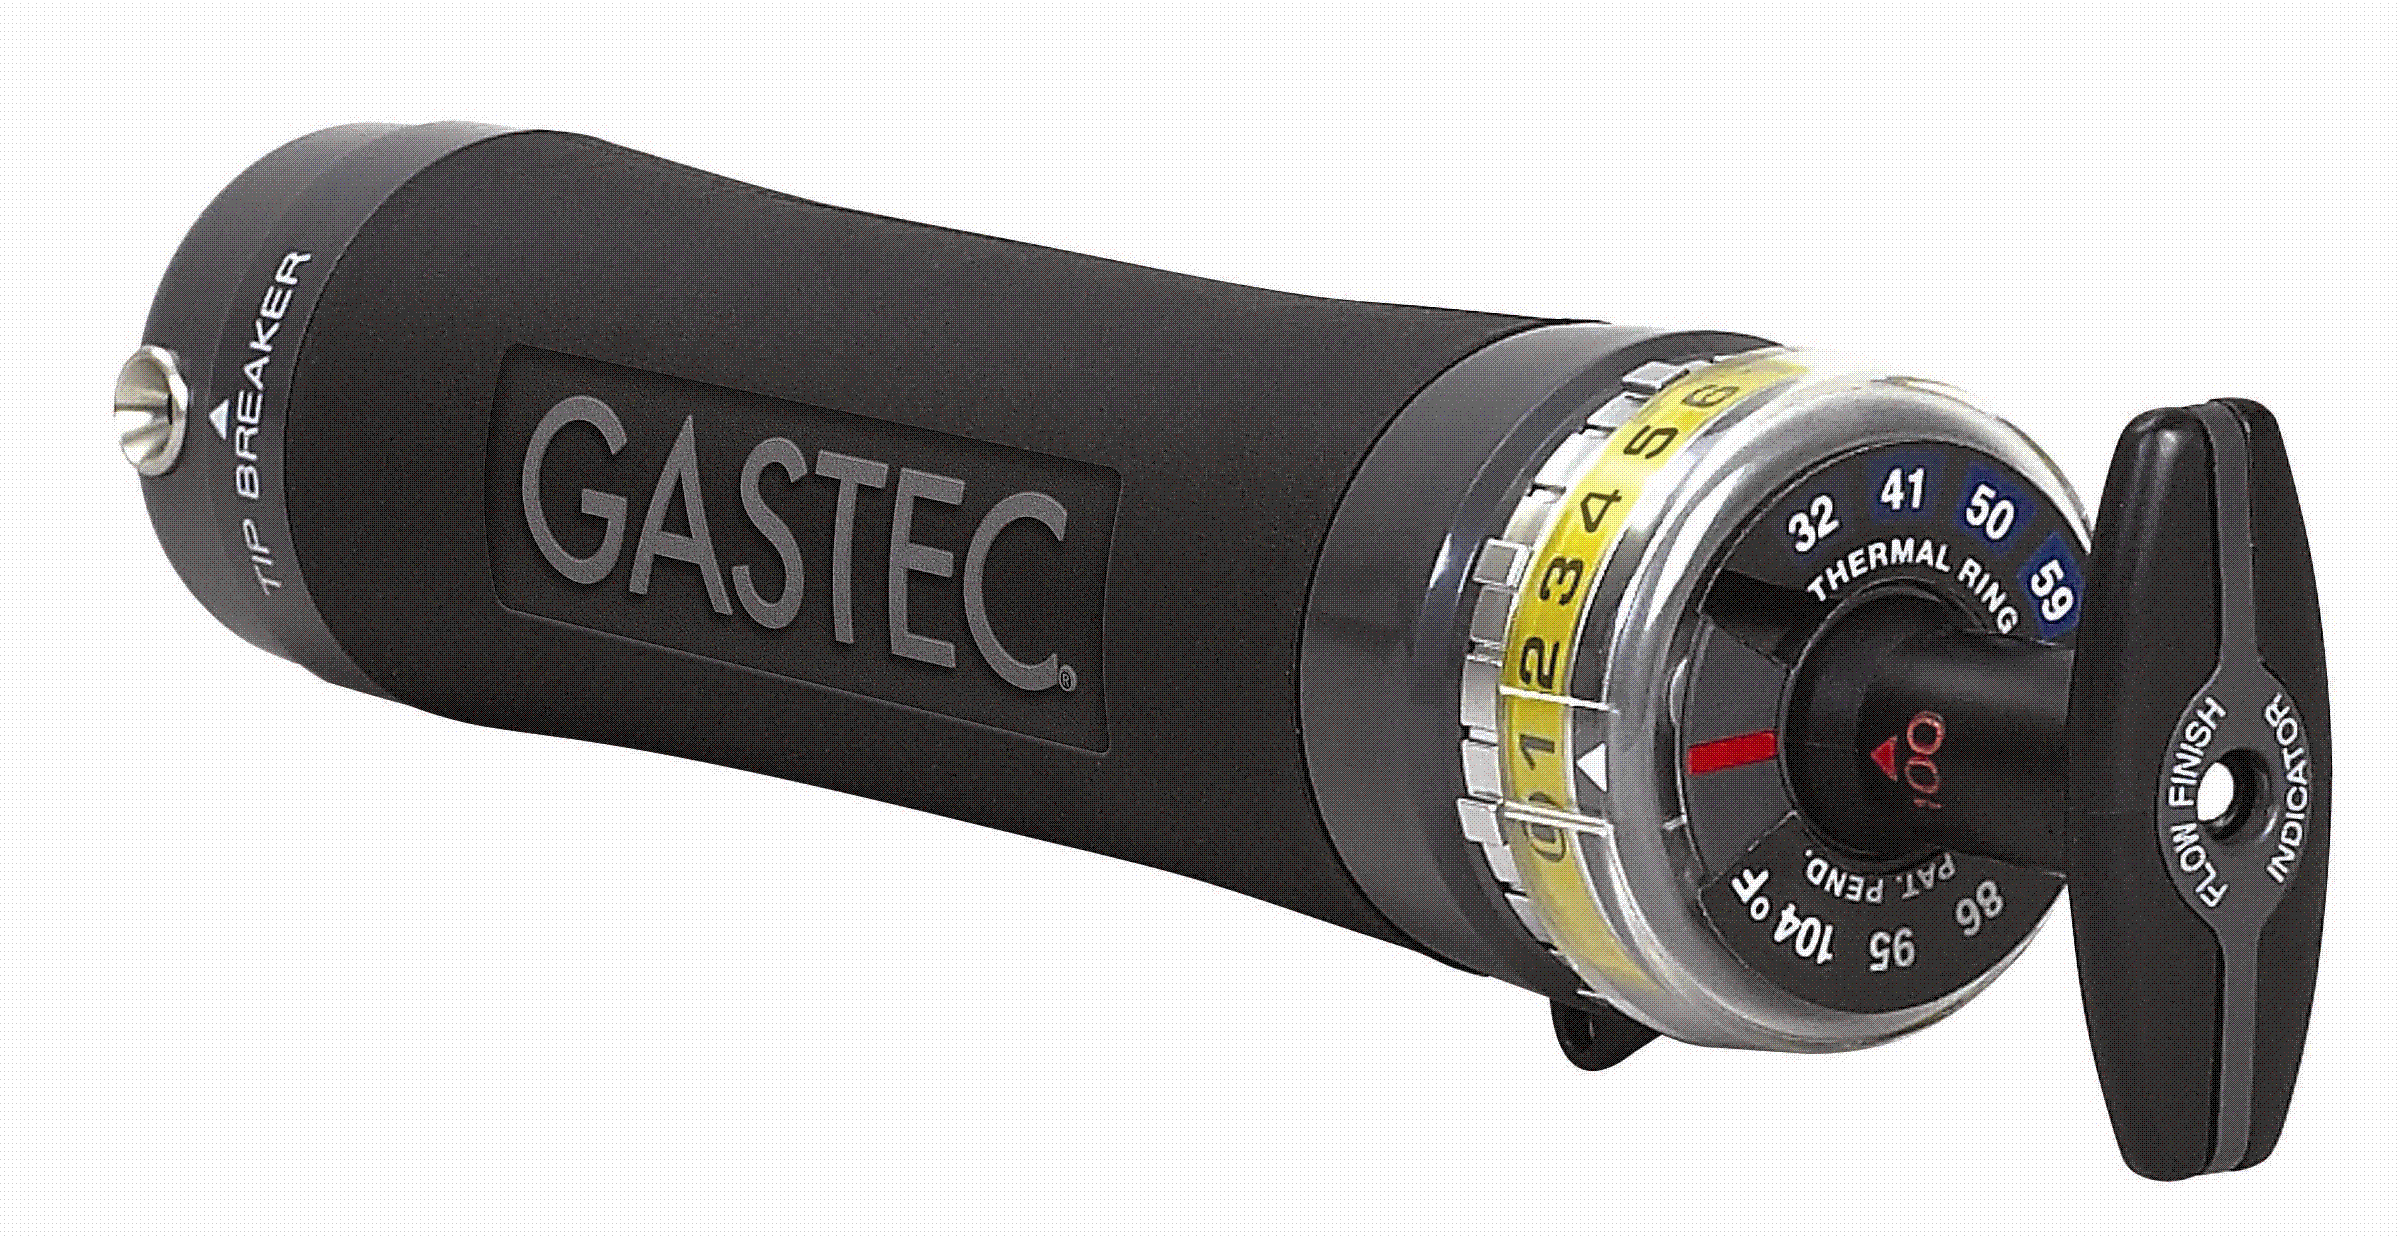 Gastec Gas Detection Pumps